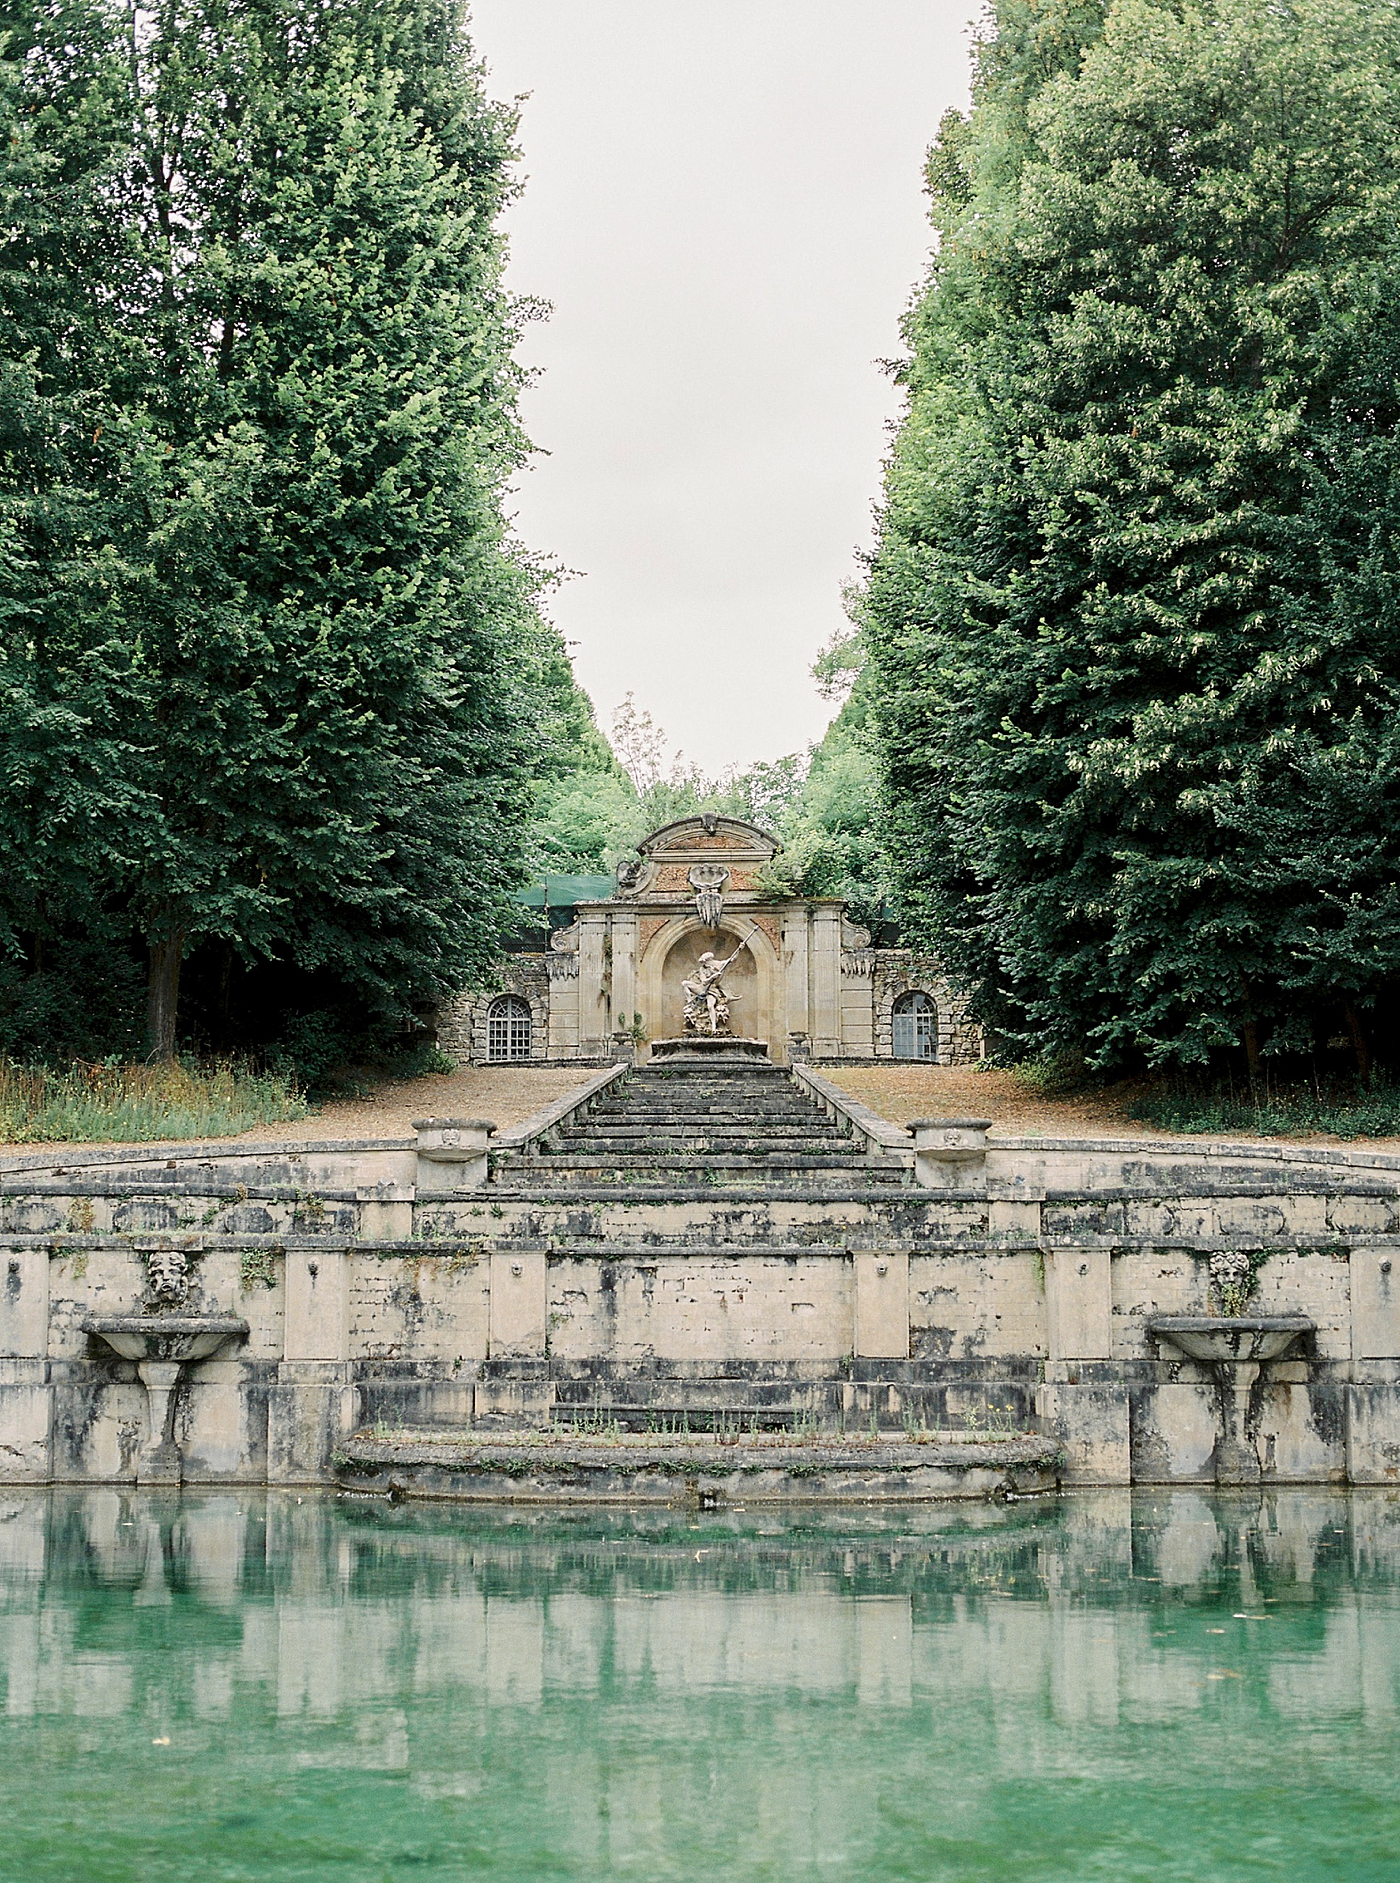 Chateau de Villette | Image by Diane Sotero 